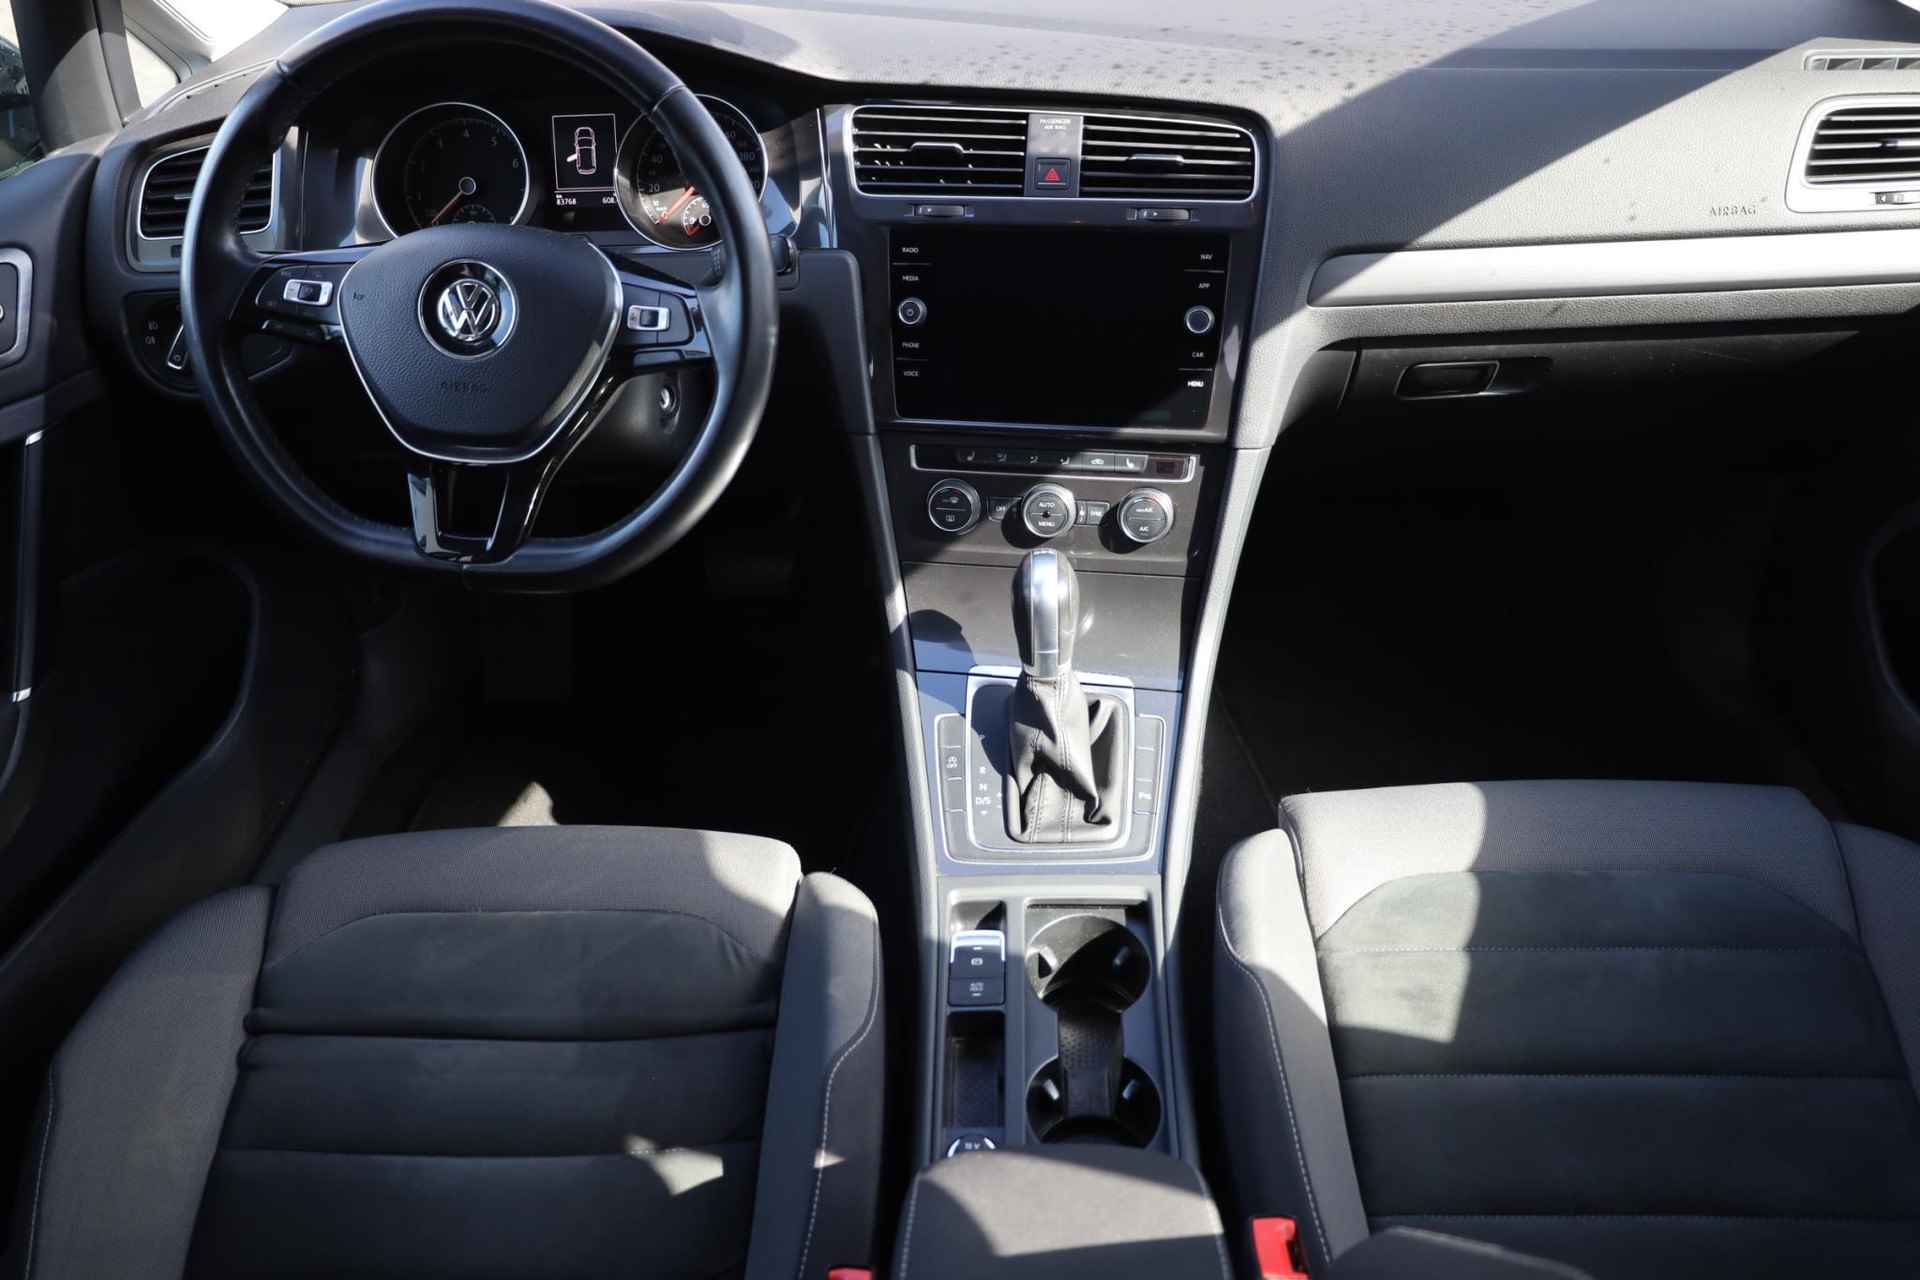 Volkswagen Golf 1.5 TSI Highline 150PK / 110kW DSG, trekhaak, adaptieve cruise control (acc), lederen multifunctioneel stuurwiel, navigatie, stoelverwarming, 16" LMV, highline interieur met sportstoelen en alcantara velours bekleding. - 3/34